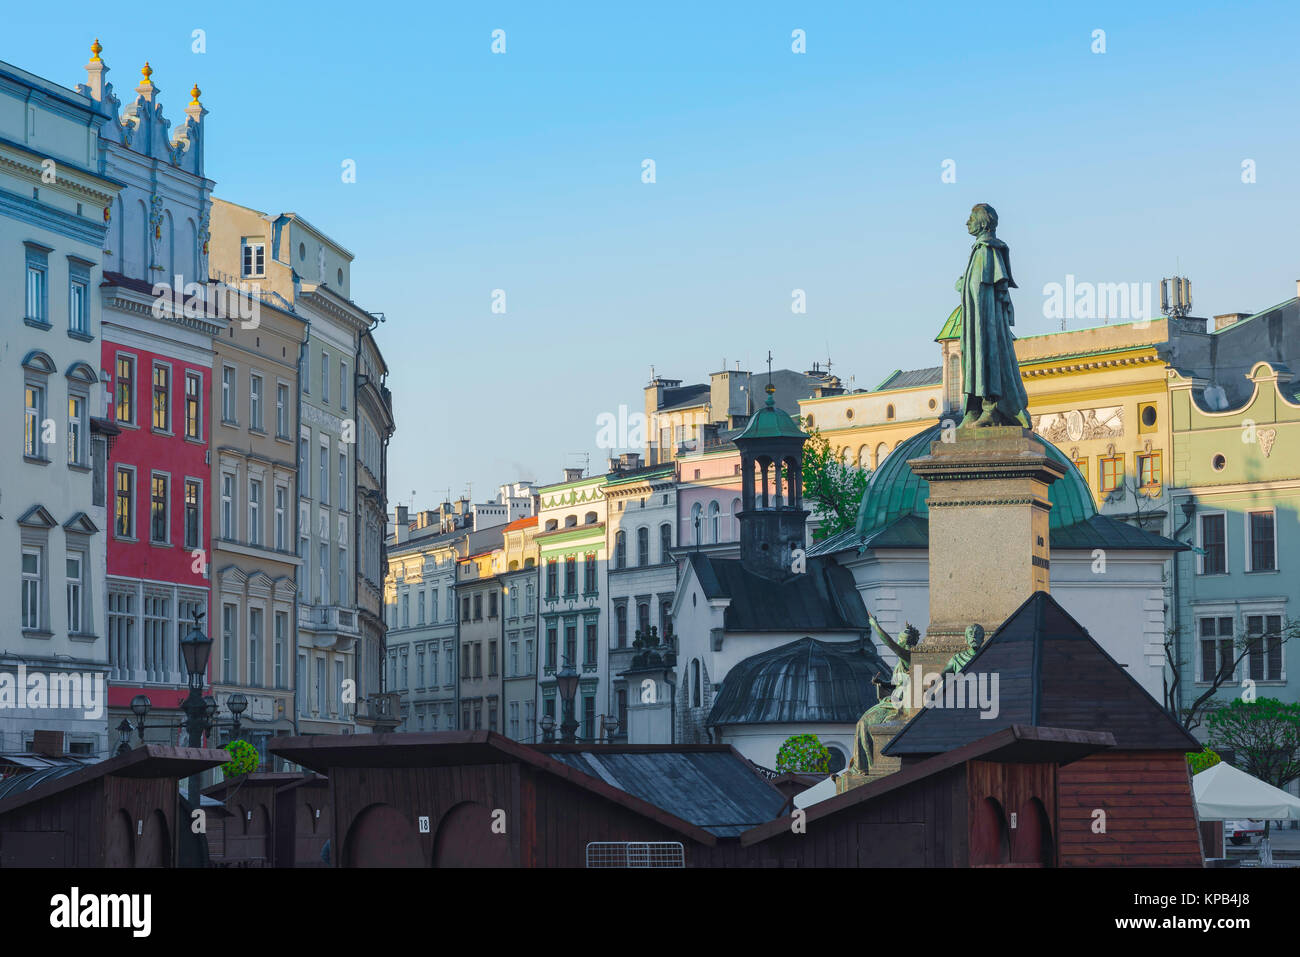 Polen barocke Architektur, Barock und Rokoko Gebäude auf der Südseite des Platzes im Zentrum von Krakau, Polen. Stockfoto